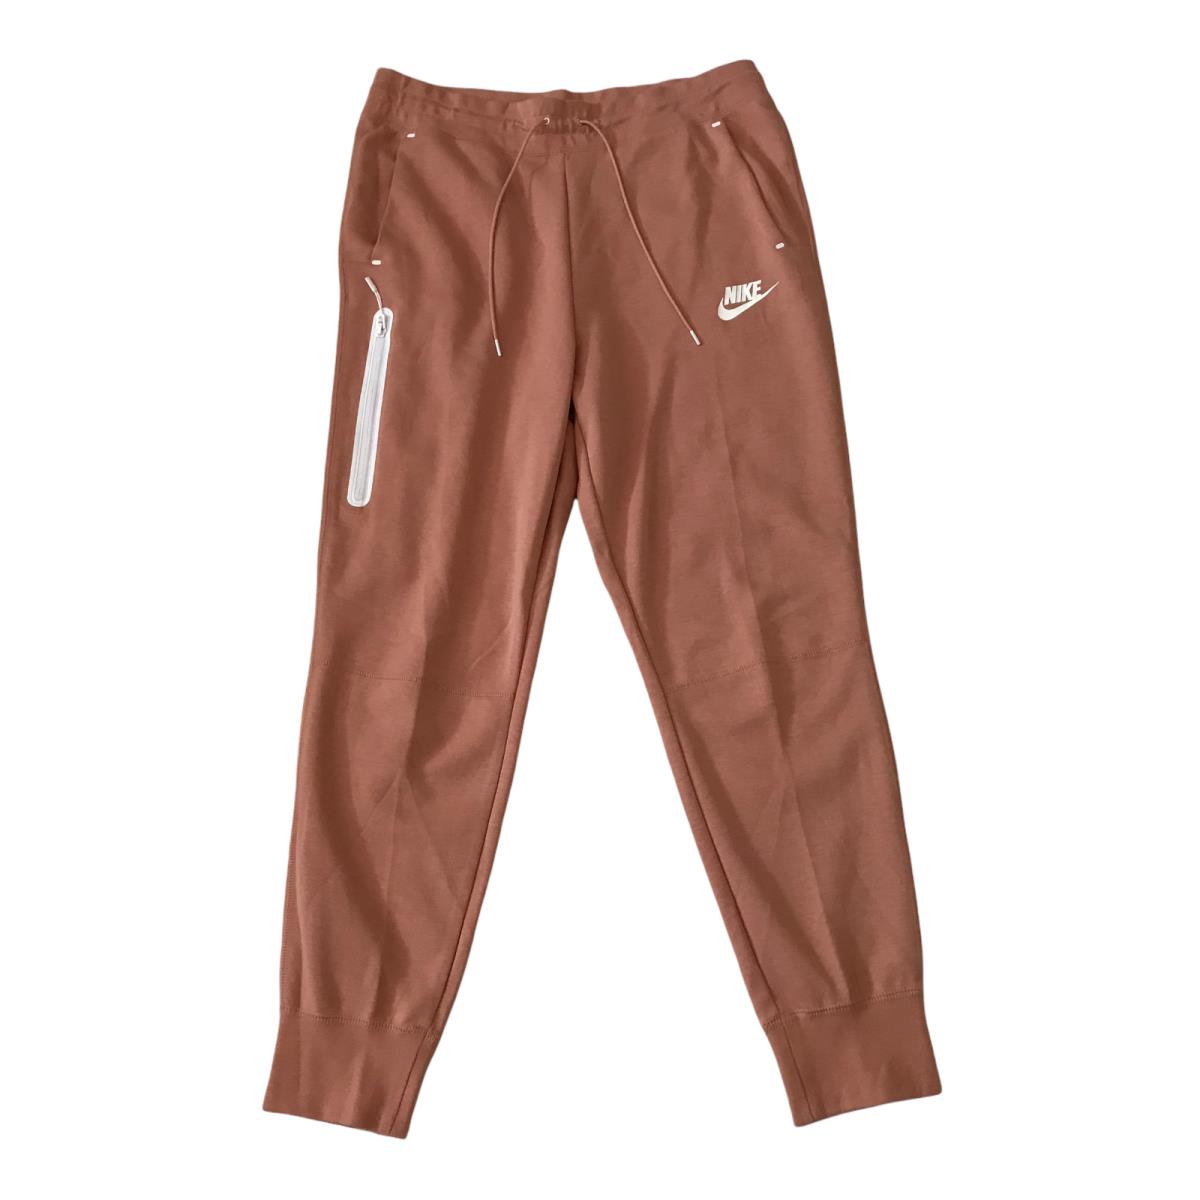 Nike Sportswear Fleece Pants Joggers Women s SZ L Peach Pink 931828-605